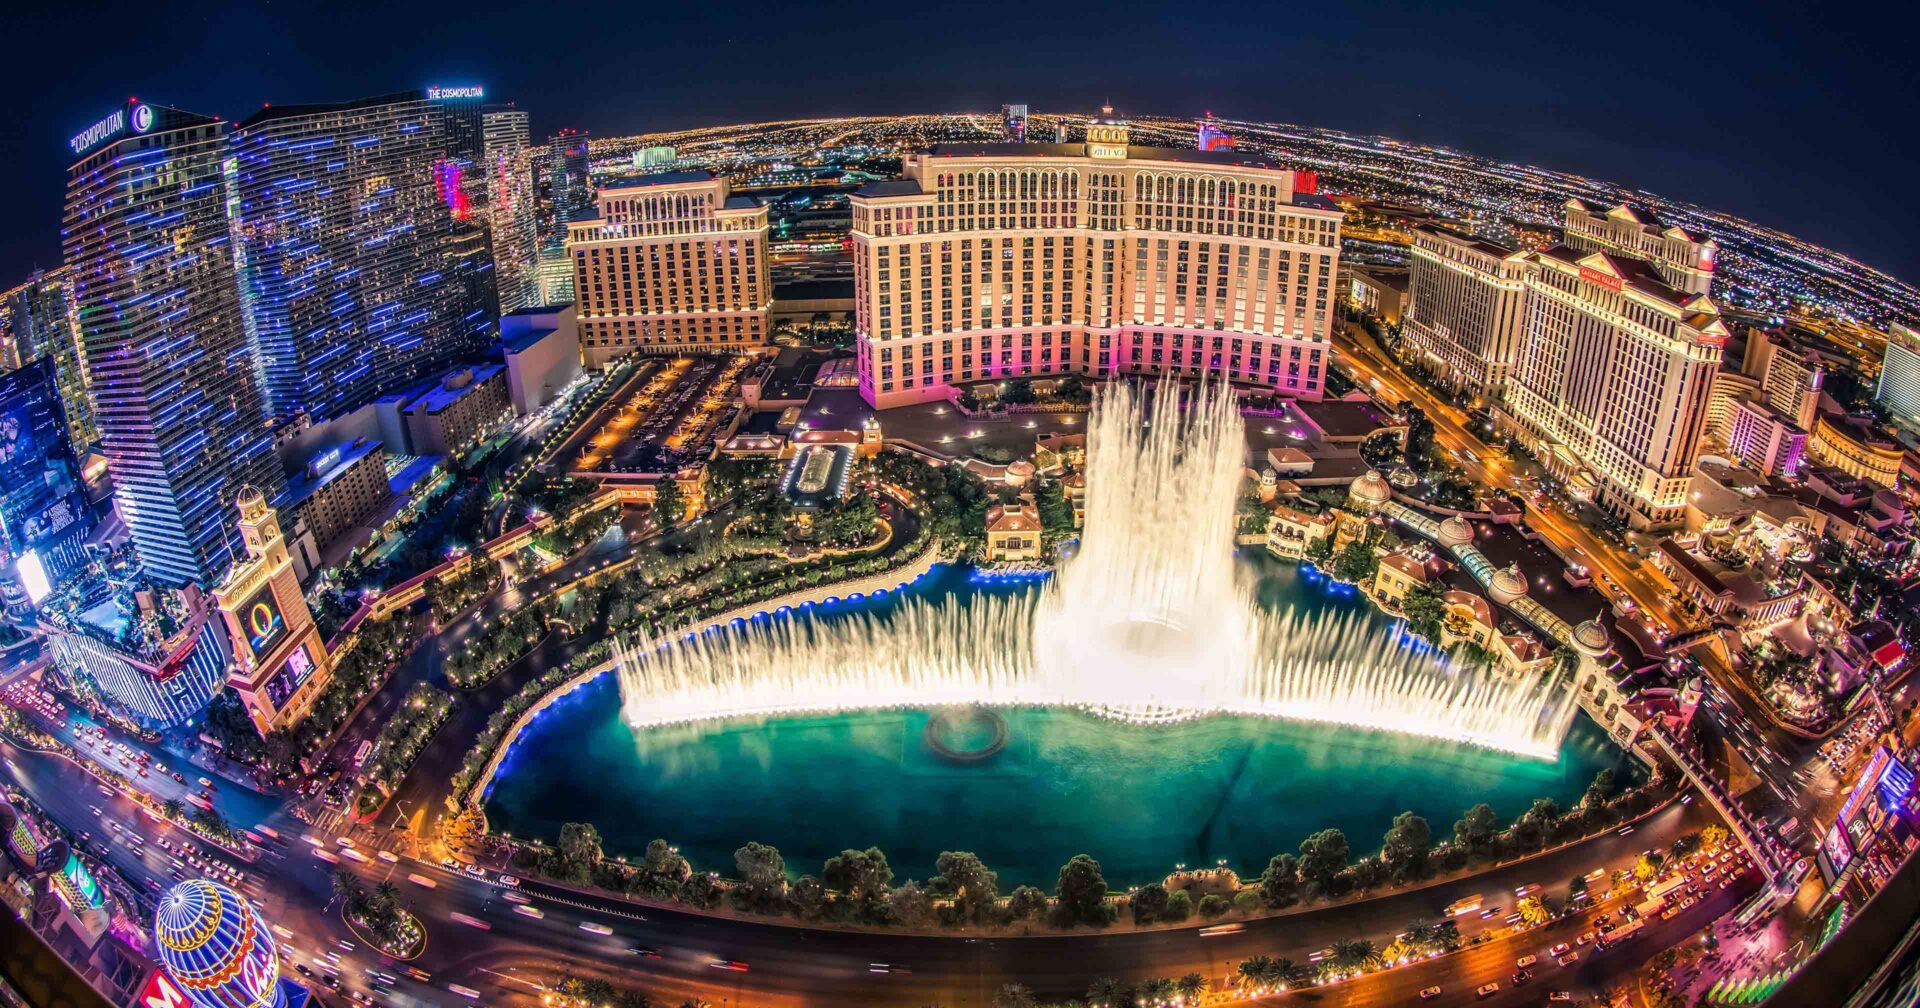 Bellagio Fountains - Las Vegas Strip attractions